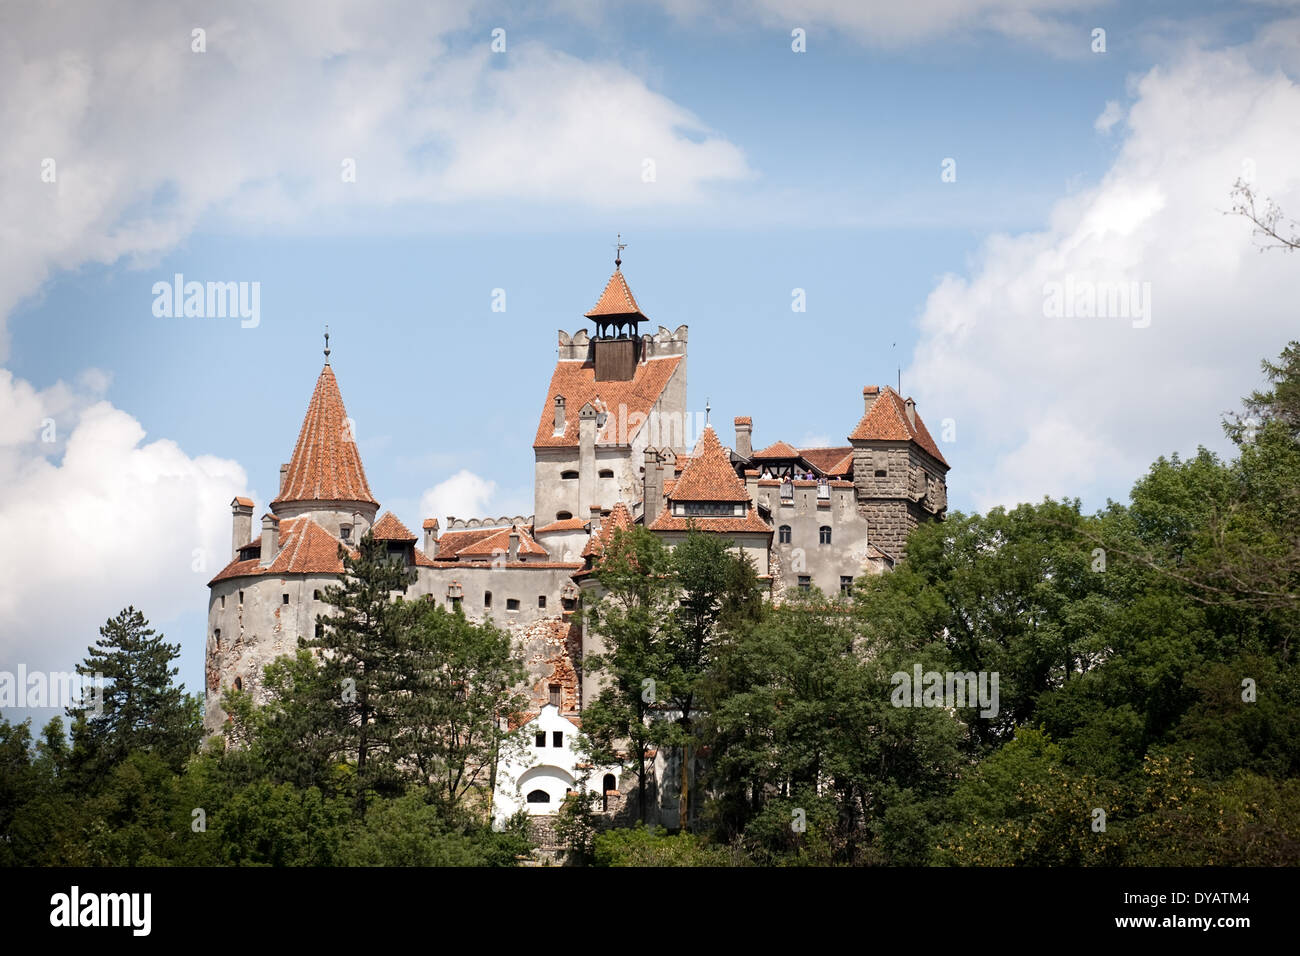 Vue de face de son château médiéval, la Valachie, Roumanie Banque D'Images